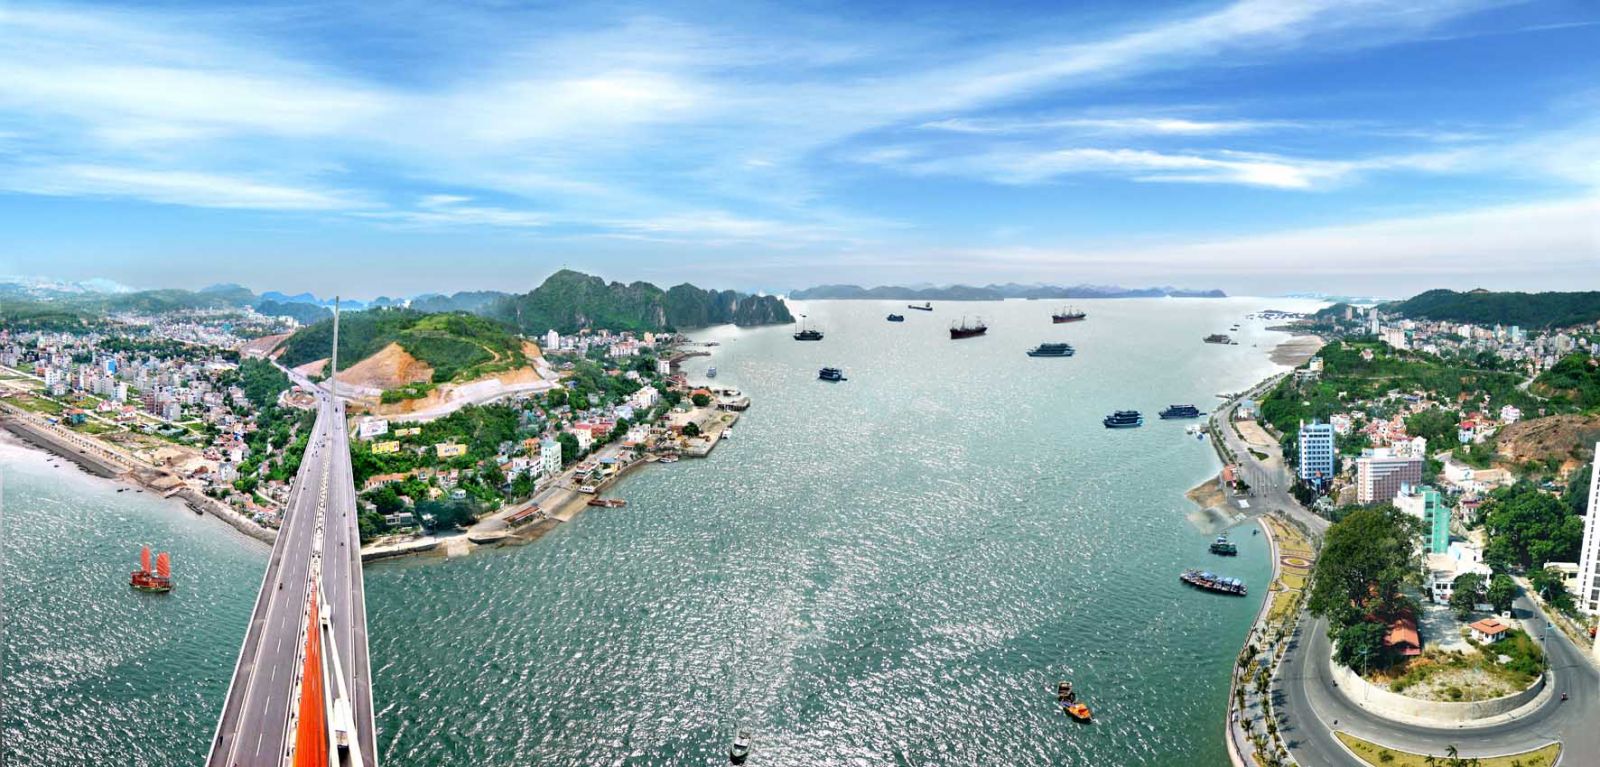 Đầu tư hạ tầng du lịch là điểm nhấn quan trọng để phát triển du lịch tại Quảng Ninh.